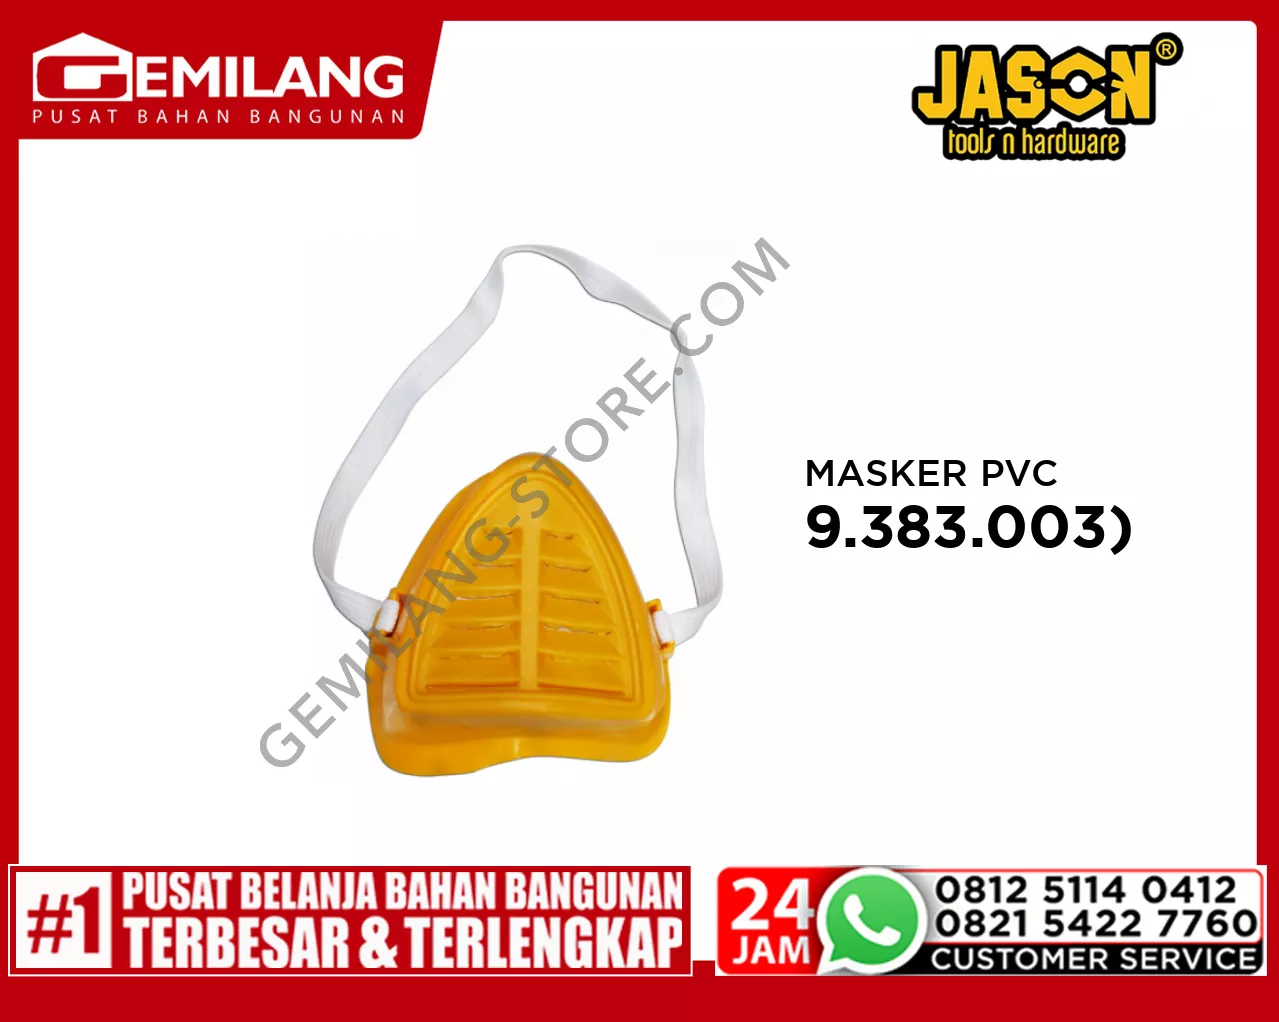 JASON MASKER KUNING PVC (9.383.003)